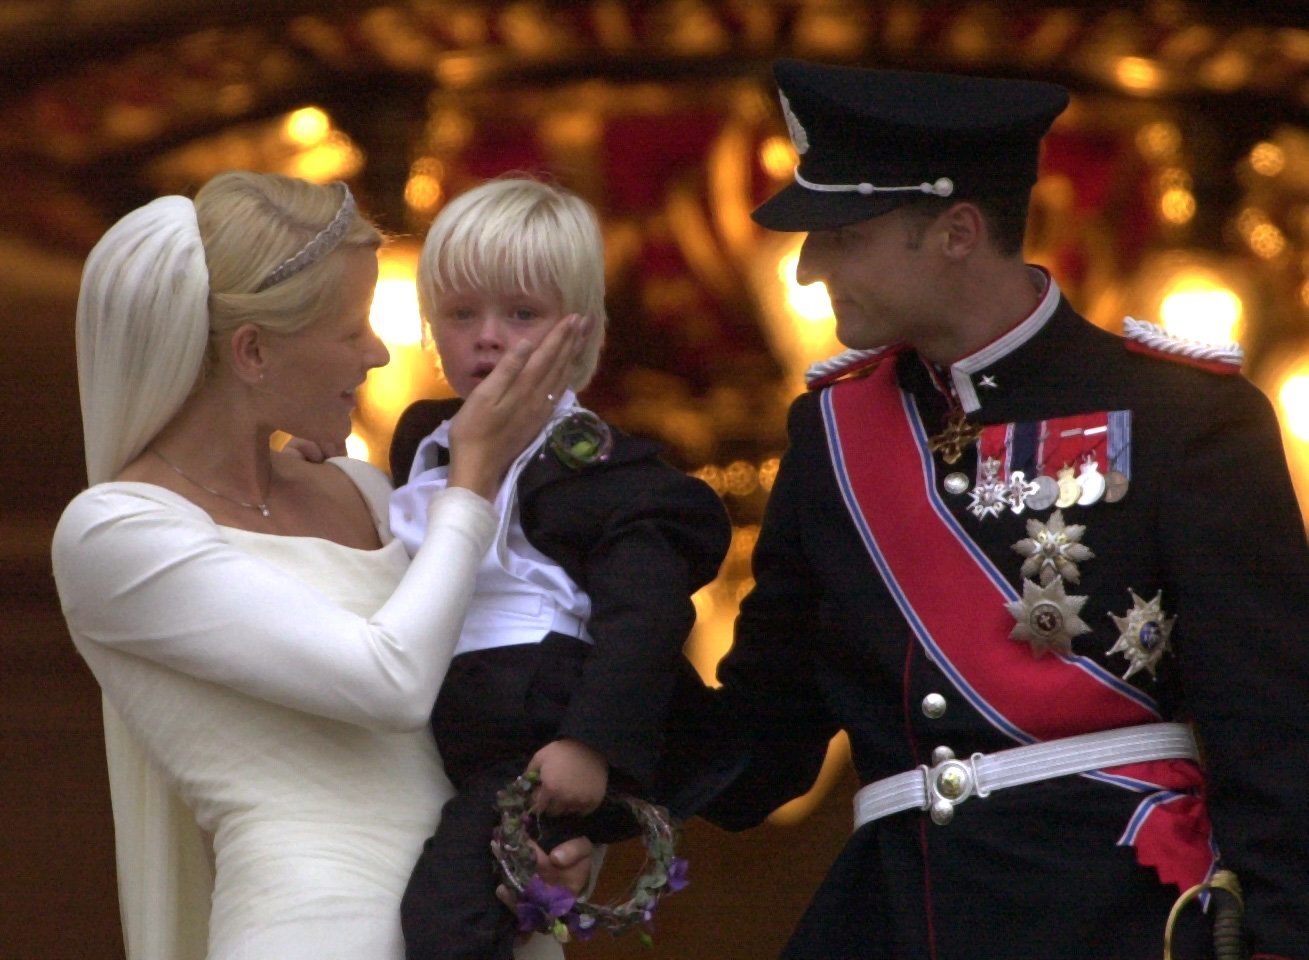 Mette-Marit és Haakon herceg esküvője